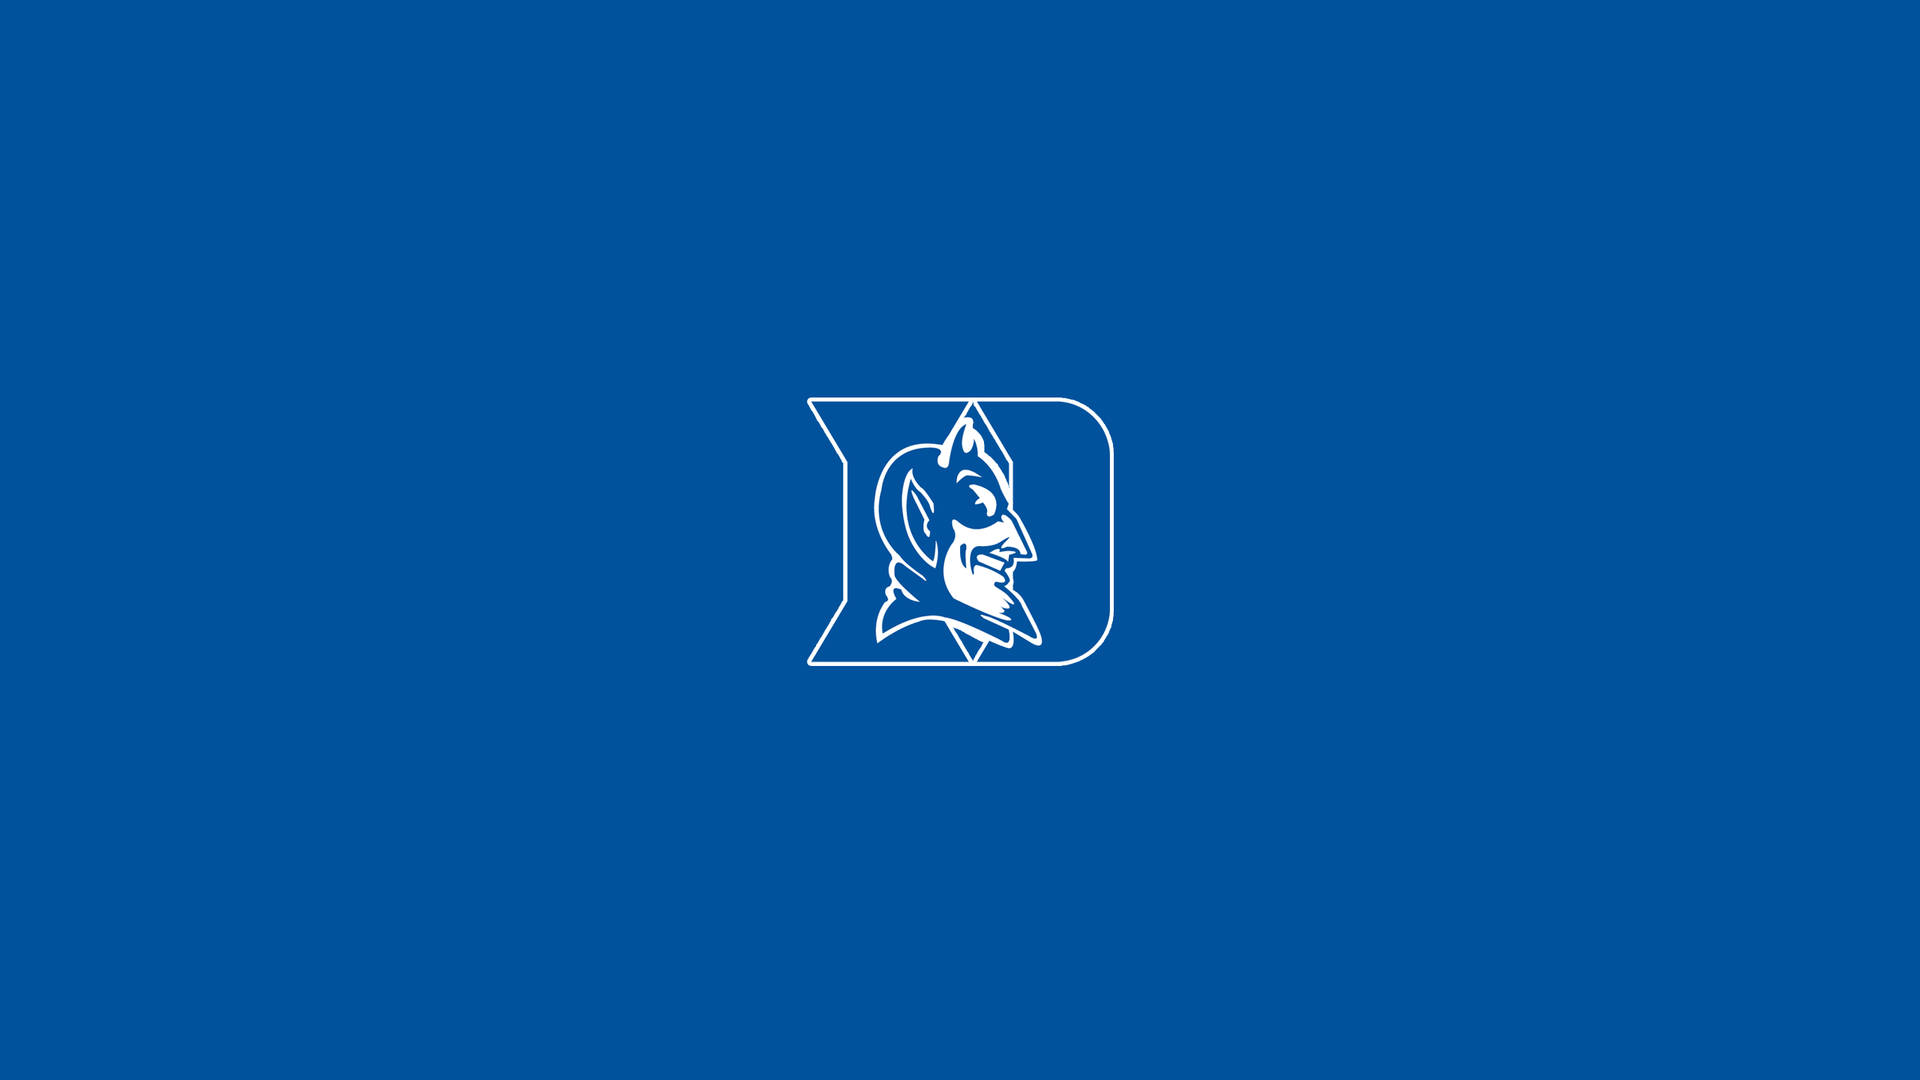 Dukeuniversity Blue Devils - Duke University Blåa Djävlar. Wallpaper